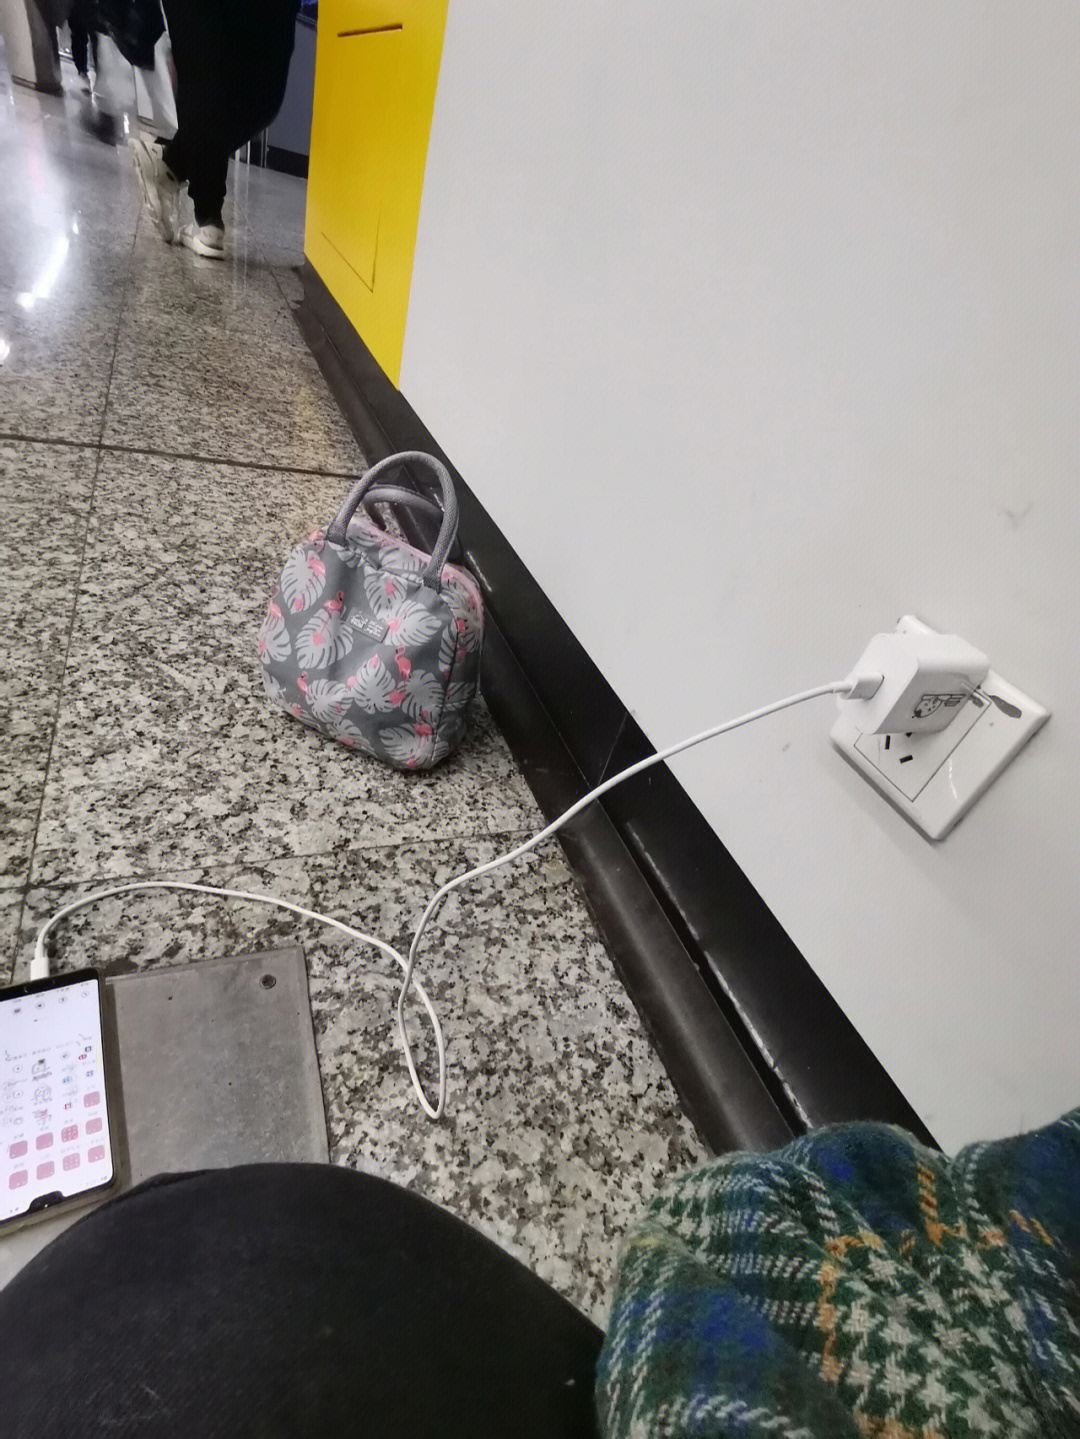 没电,幸好带了充电器,所以现在的我蹲在地铁站在充电等同事一起坐核酸